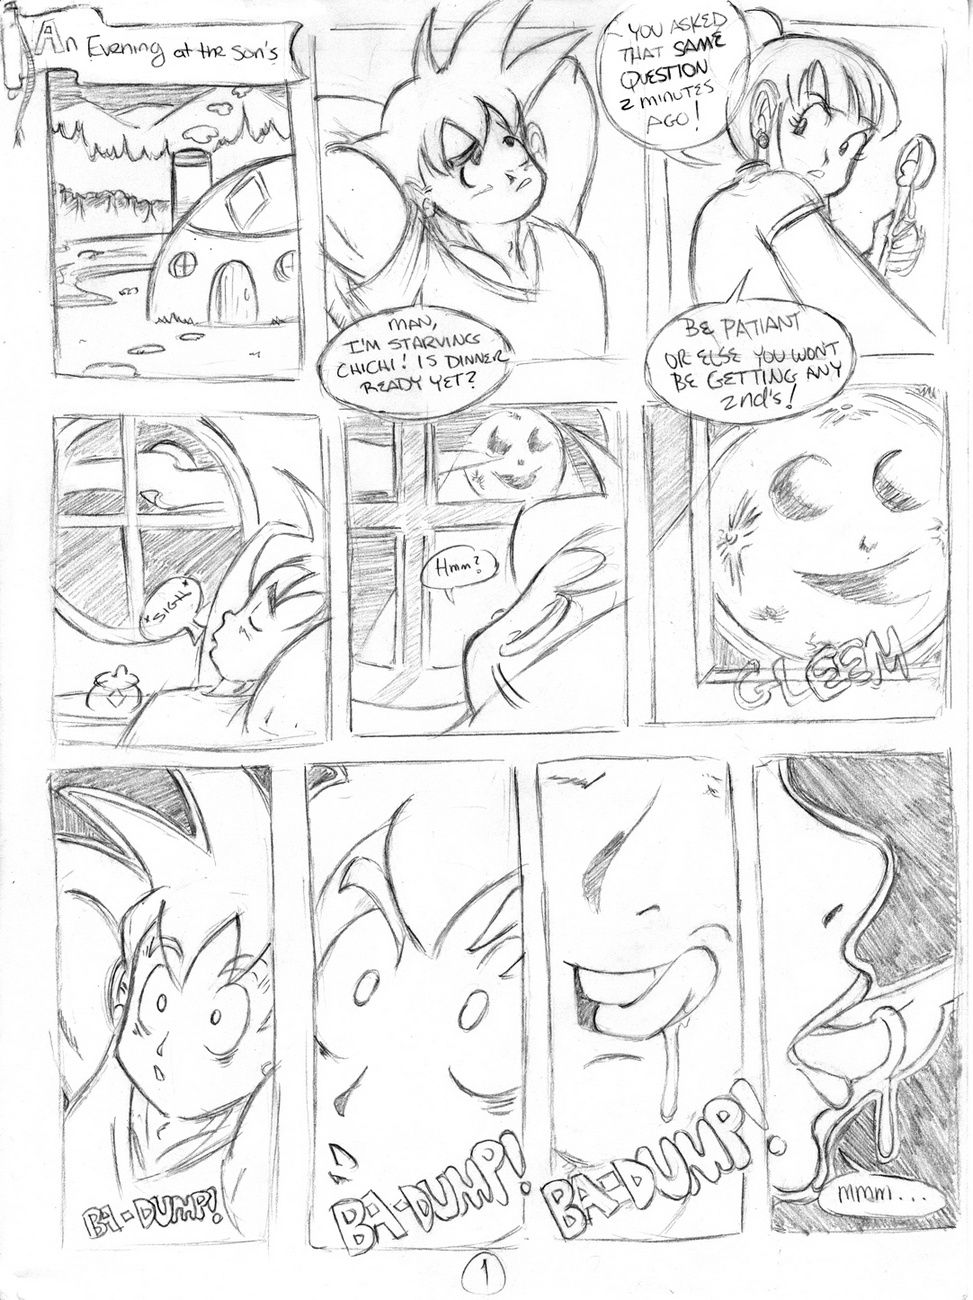 ドラゴン シチュー page 1